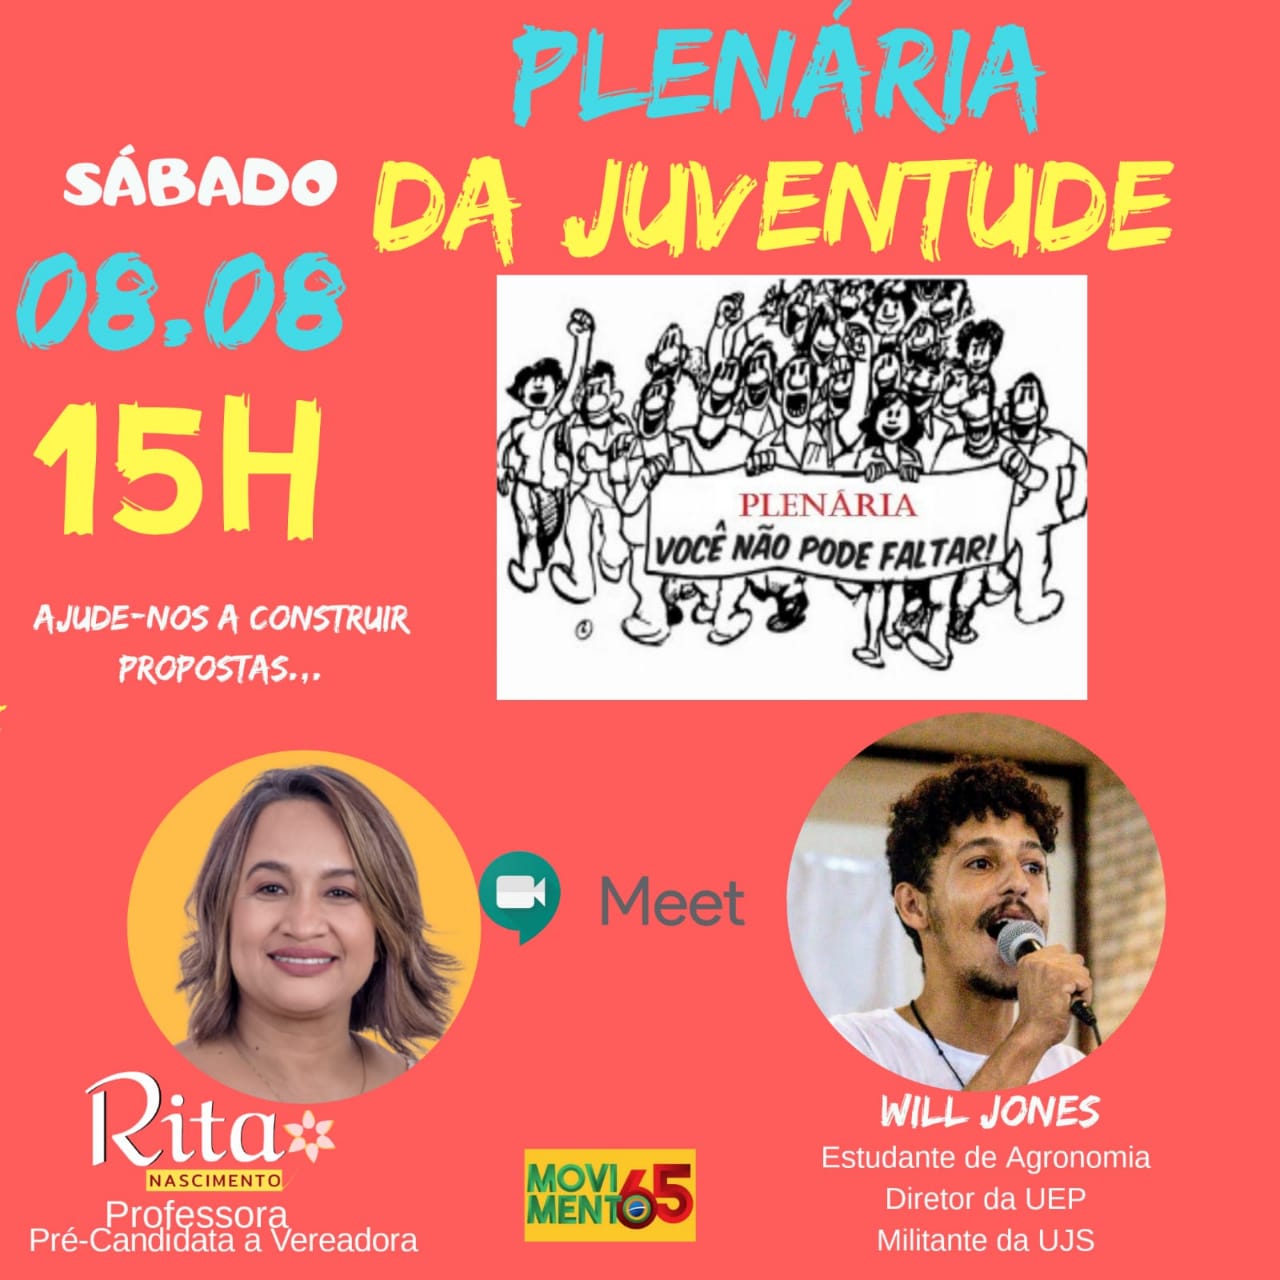 Rita Nascimento realiza Plenária Virtual com a Juventude